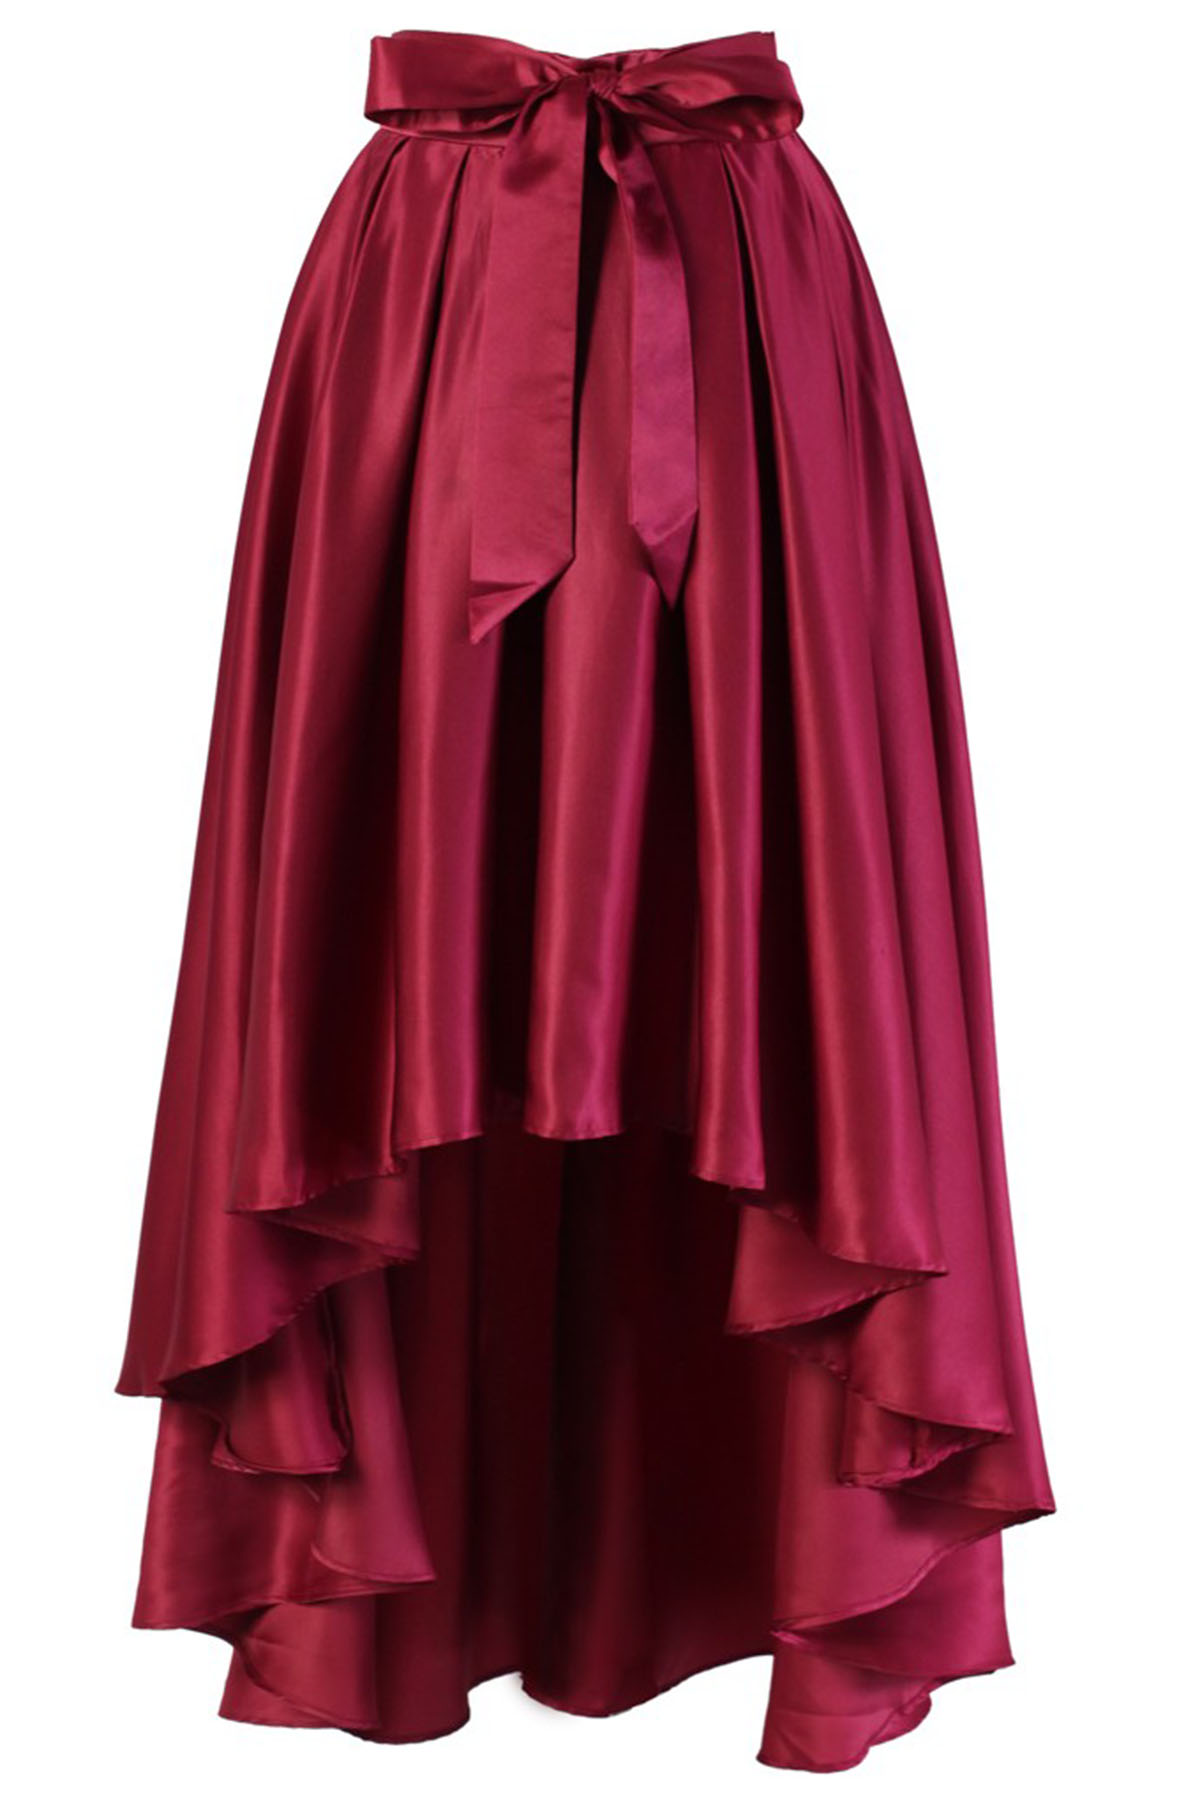 Cute Burgundy Midi Skirt - All Bottoms | Red Dress